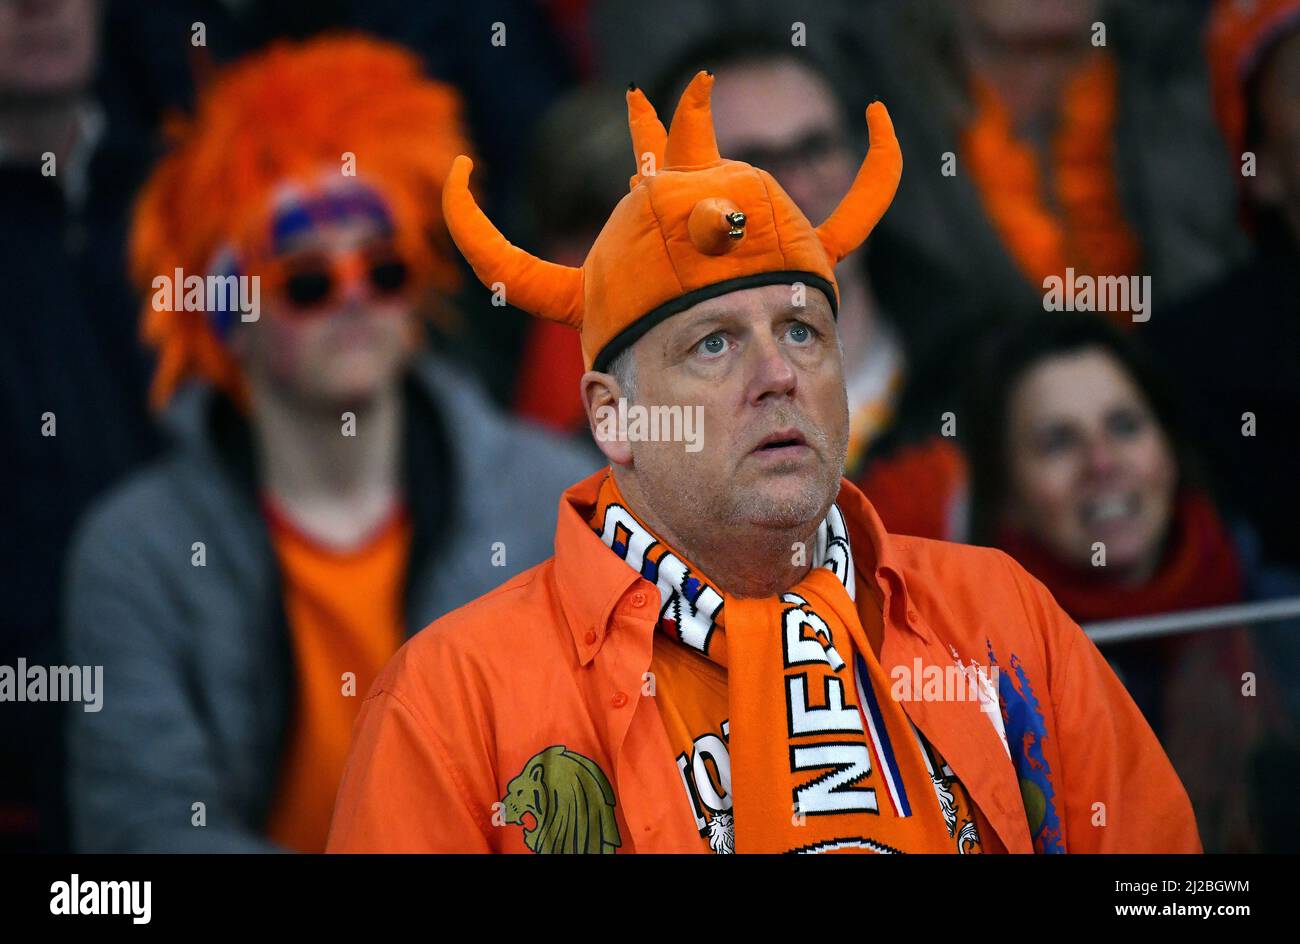 Partido amistoso, Amsterdam Arena: Países Bajos vs Alemania; fan holandés. Foto de stock